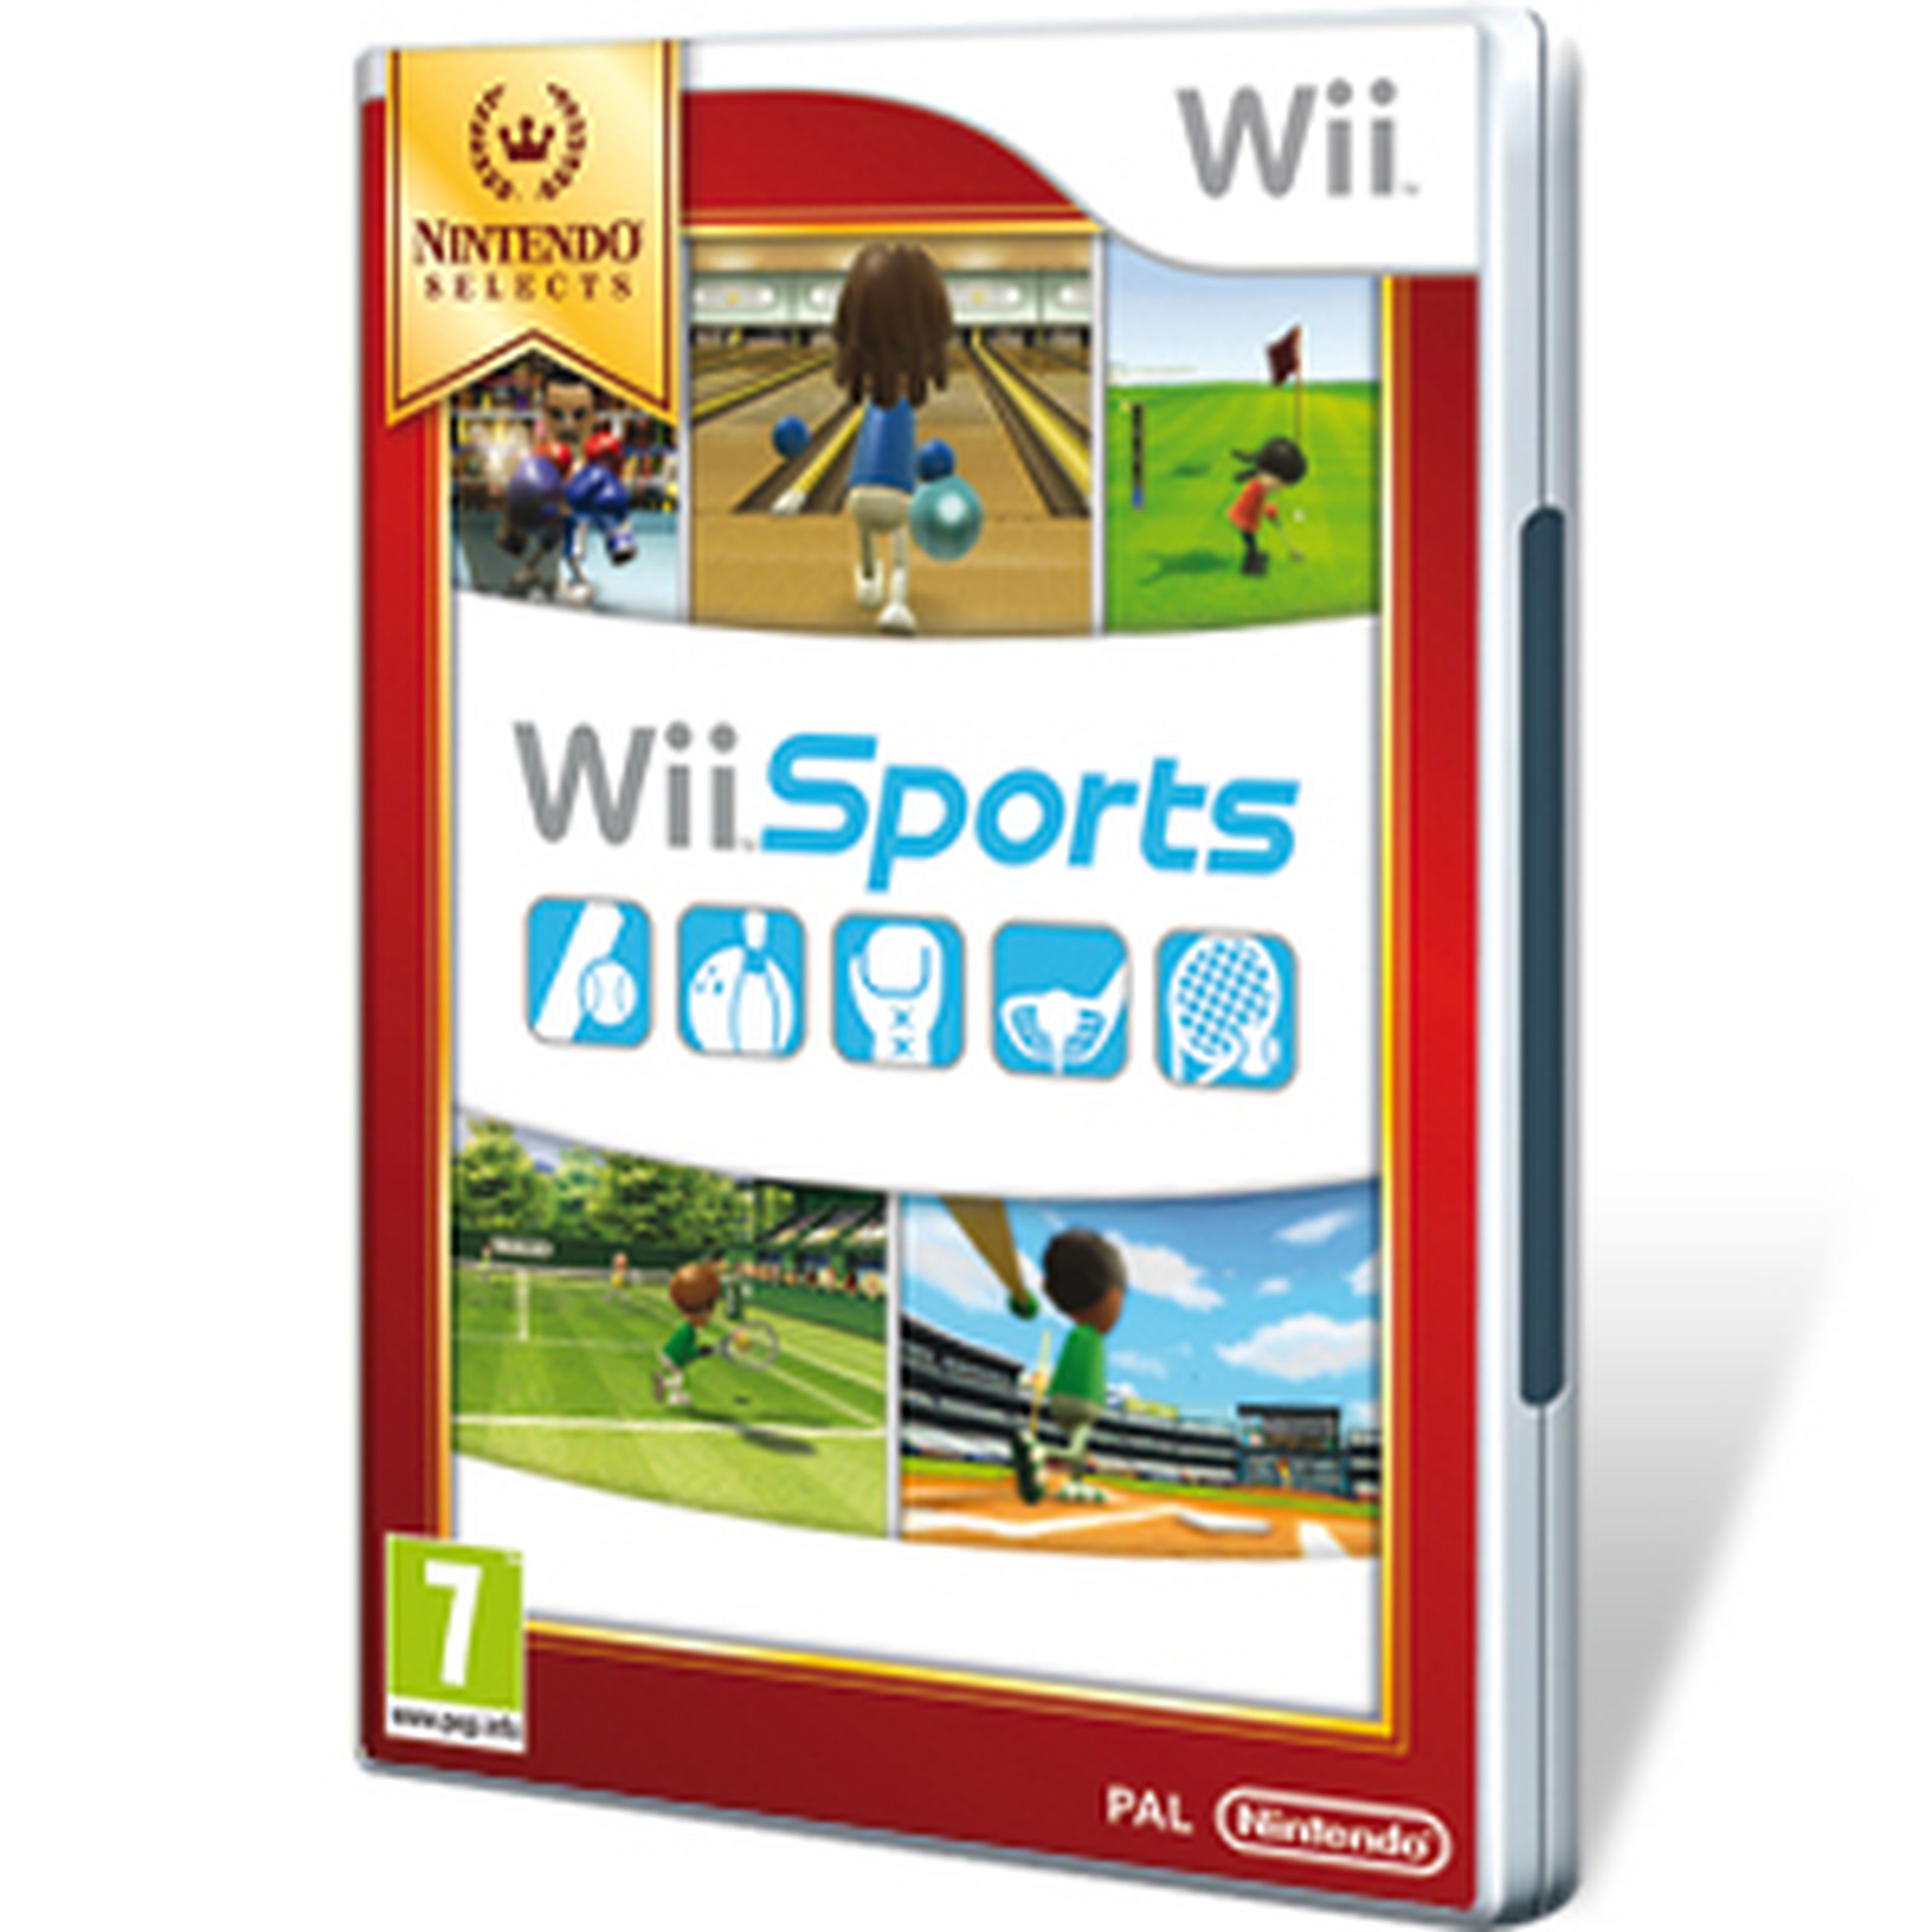 Wii Sports para Wii